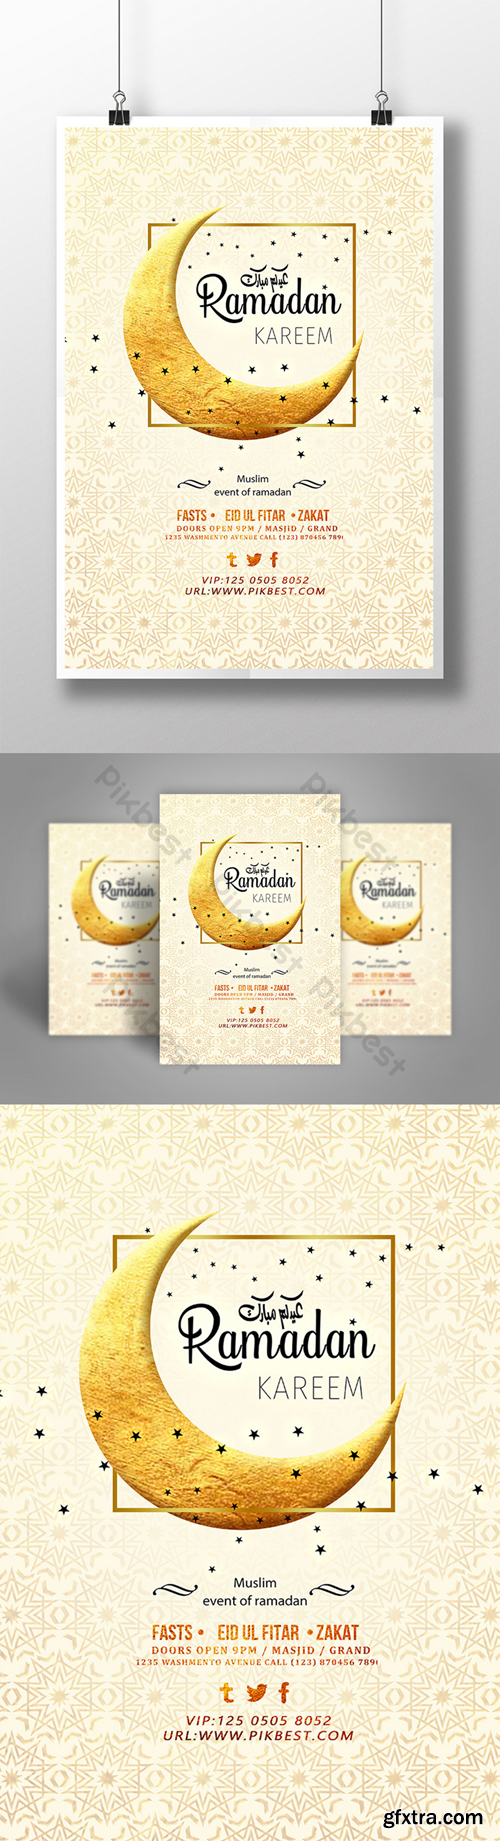 Creative golden background Ramadan poster Template PSD